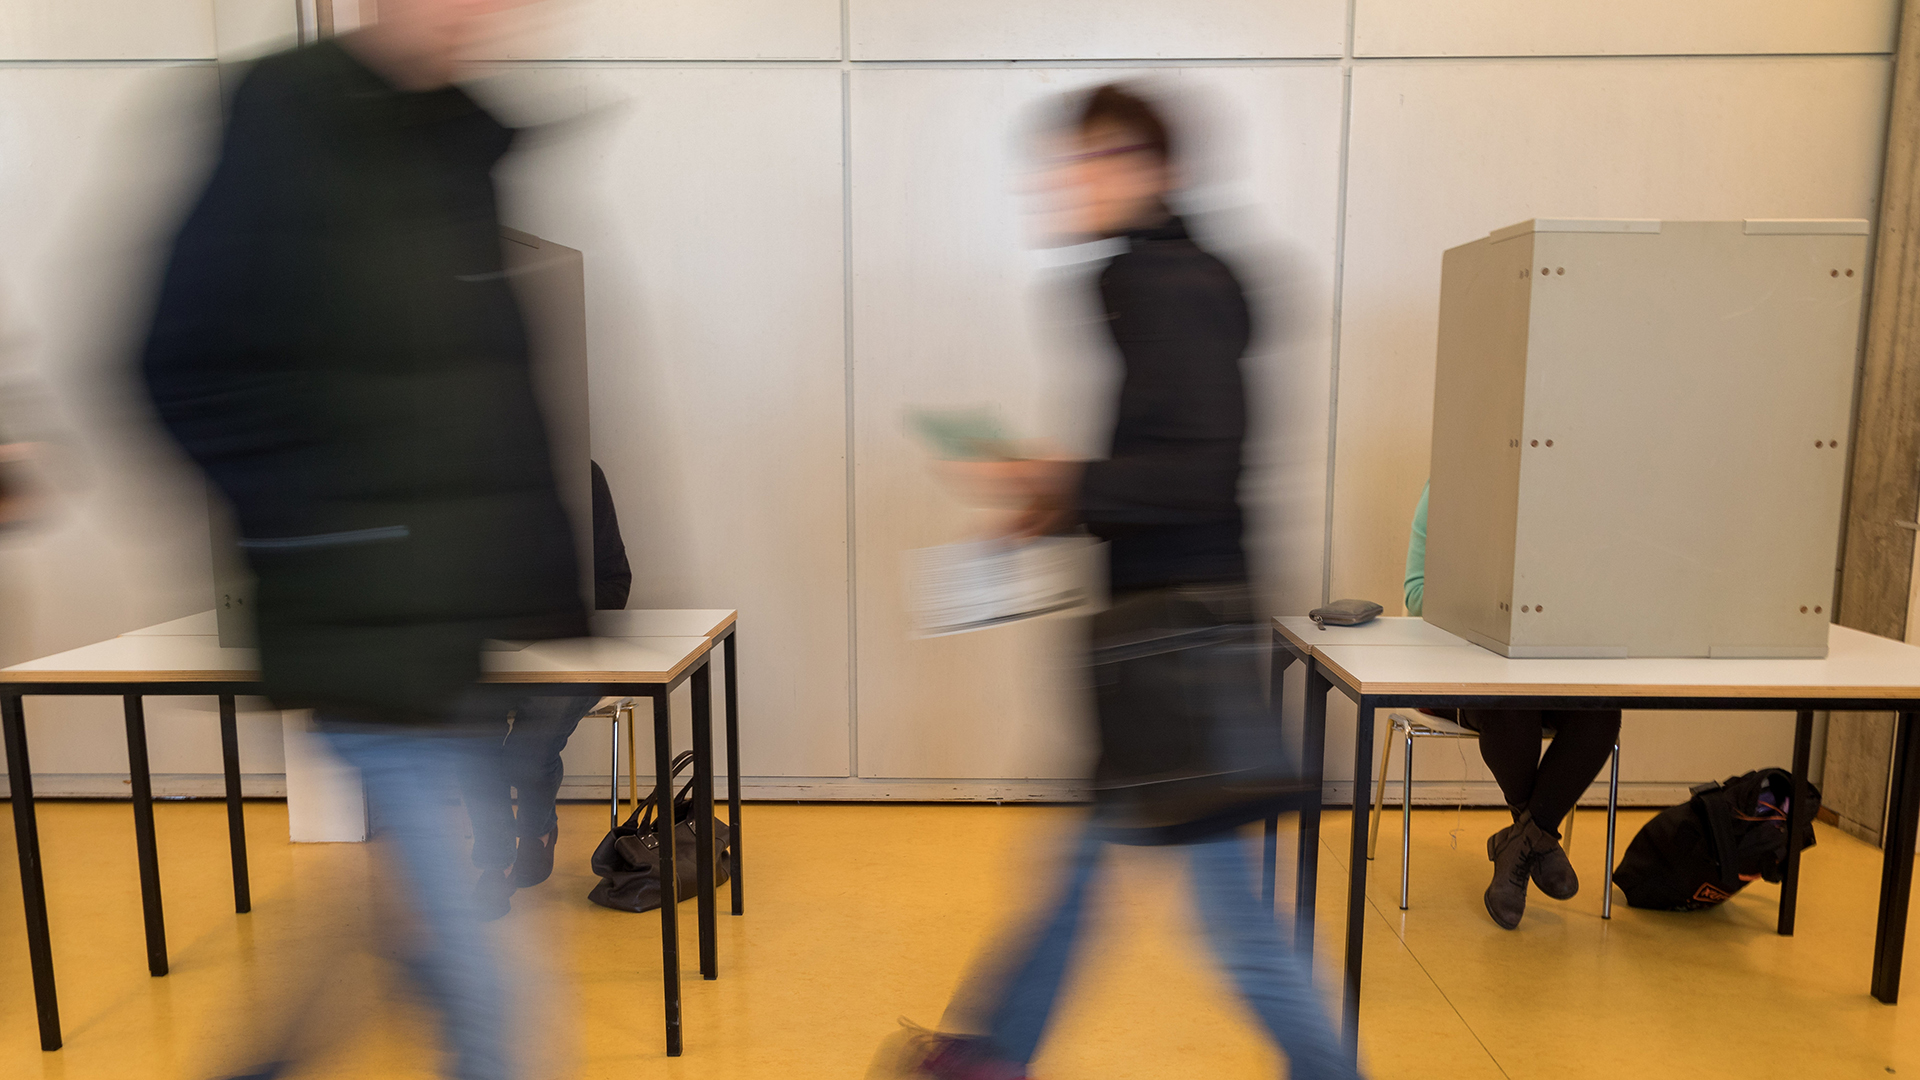 Bürger geben am 24.09.2017 in Bremen im Wahllokal ihre Stimmen zur Bundestagswahl 2017 ab. | picture alliance / Mohssen Assan